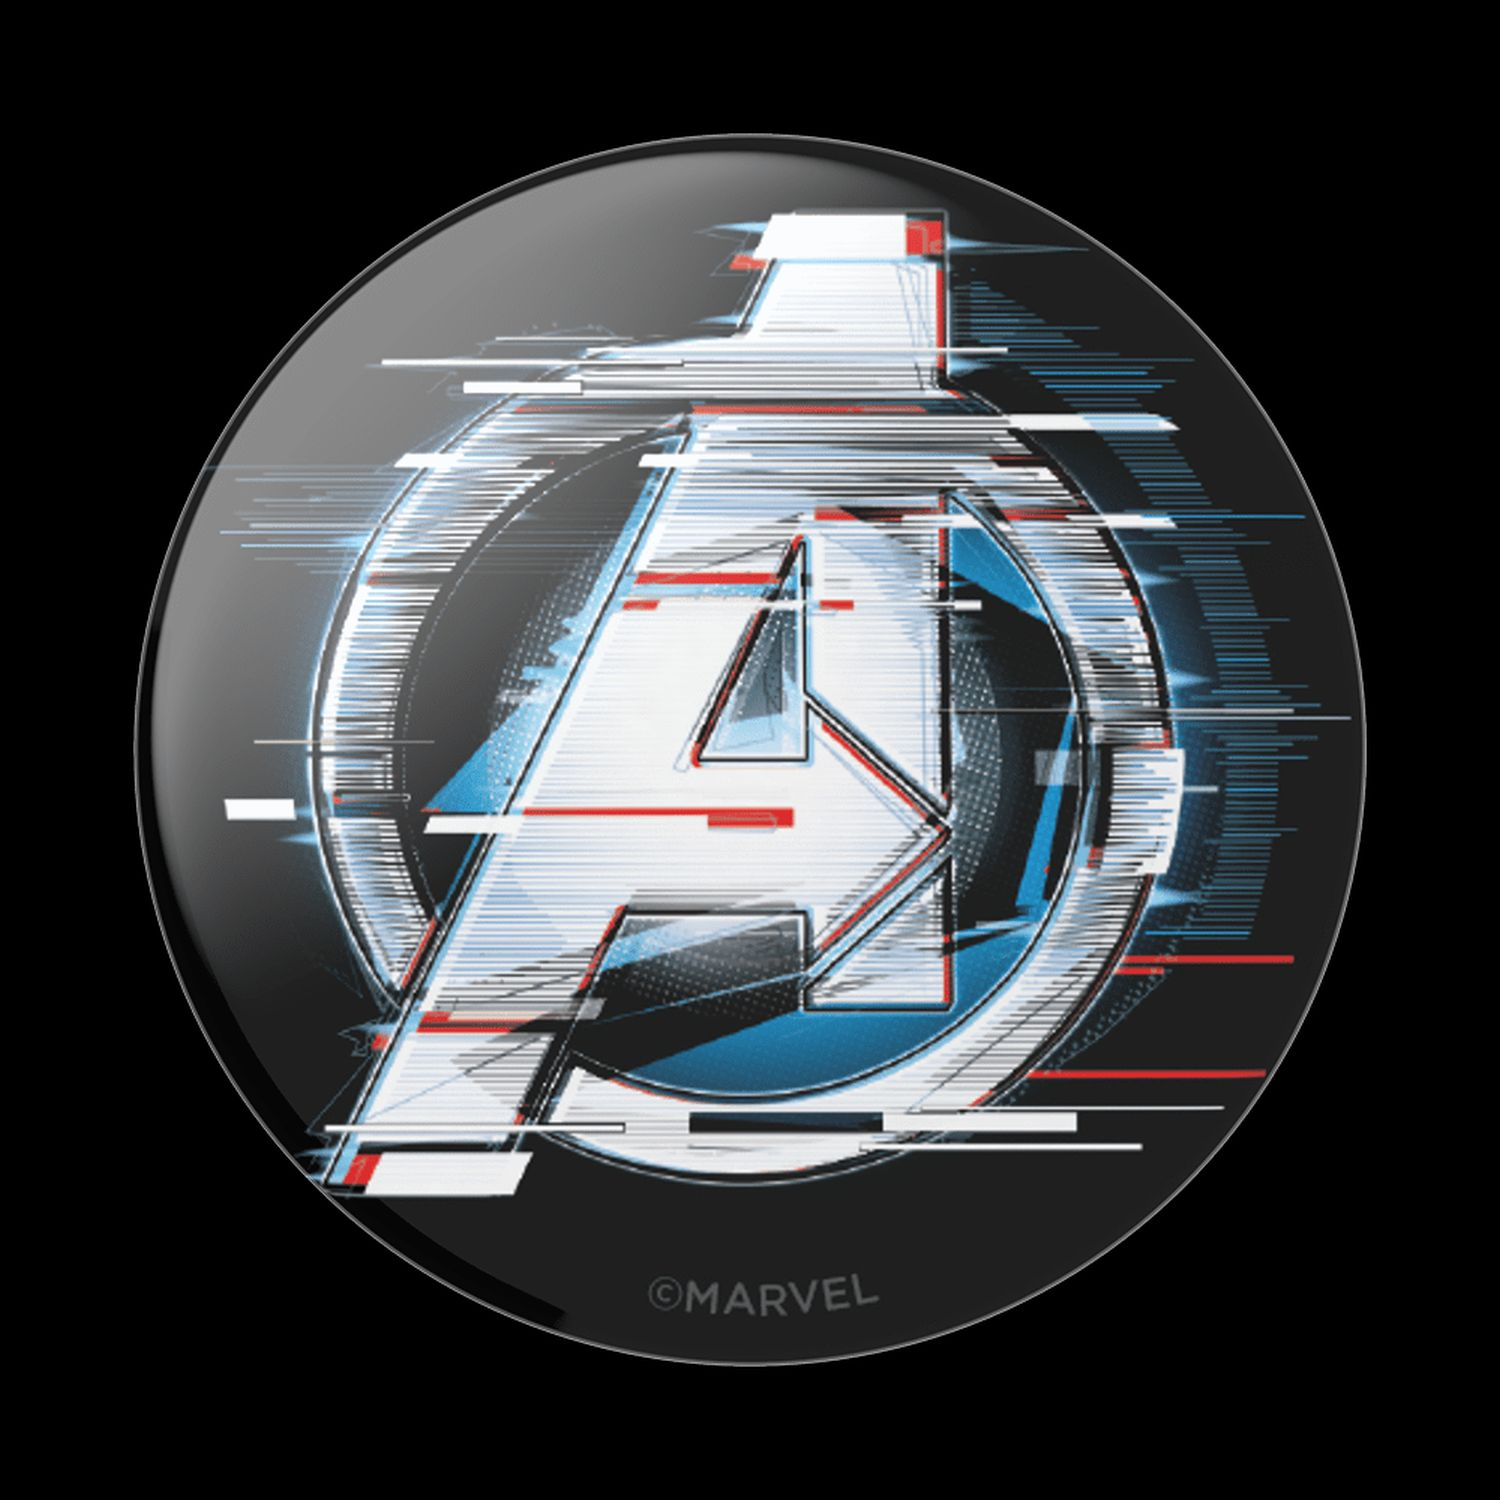 Logo Shattered Avengers PopGrip